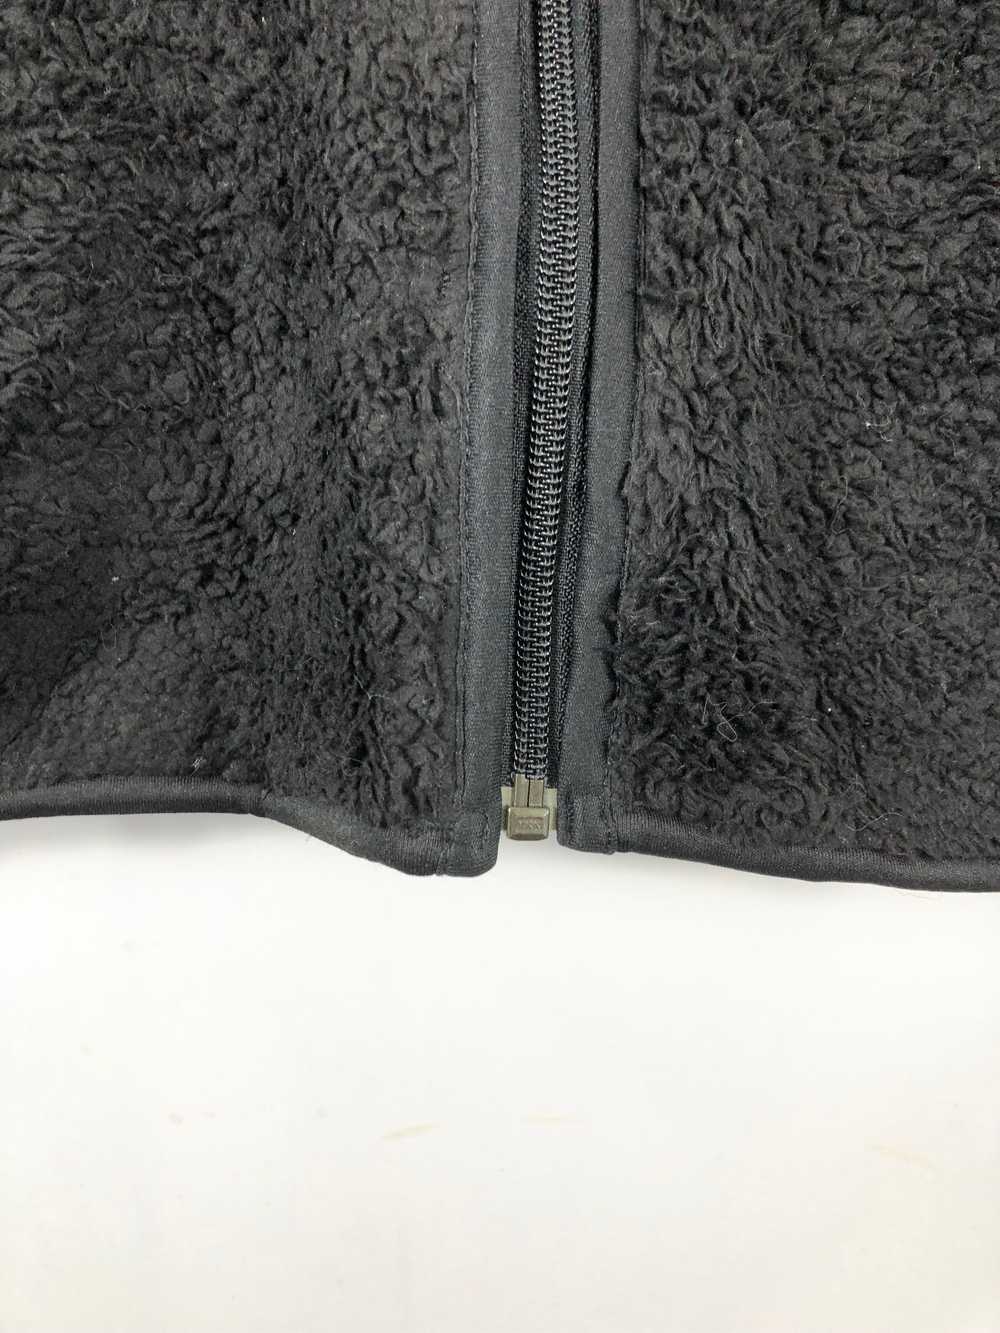 Uniqlo - Uniqlo Matted Bulky Fleece Jacket - image 8